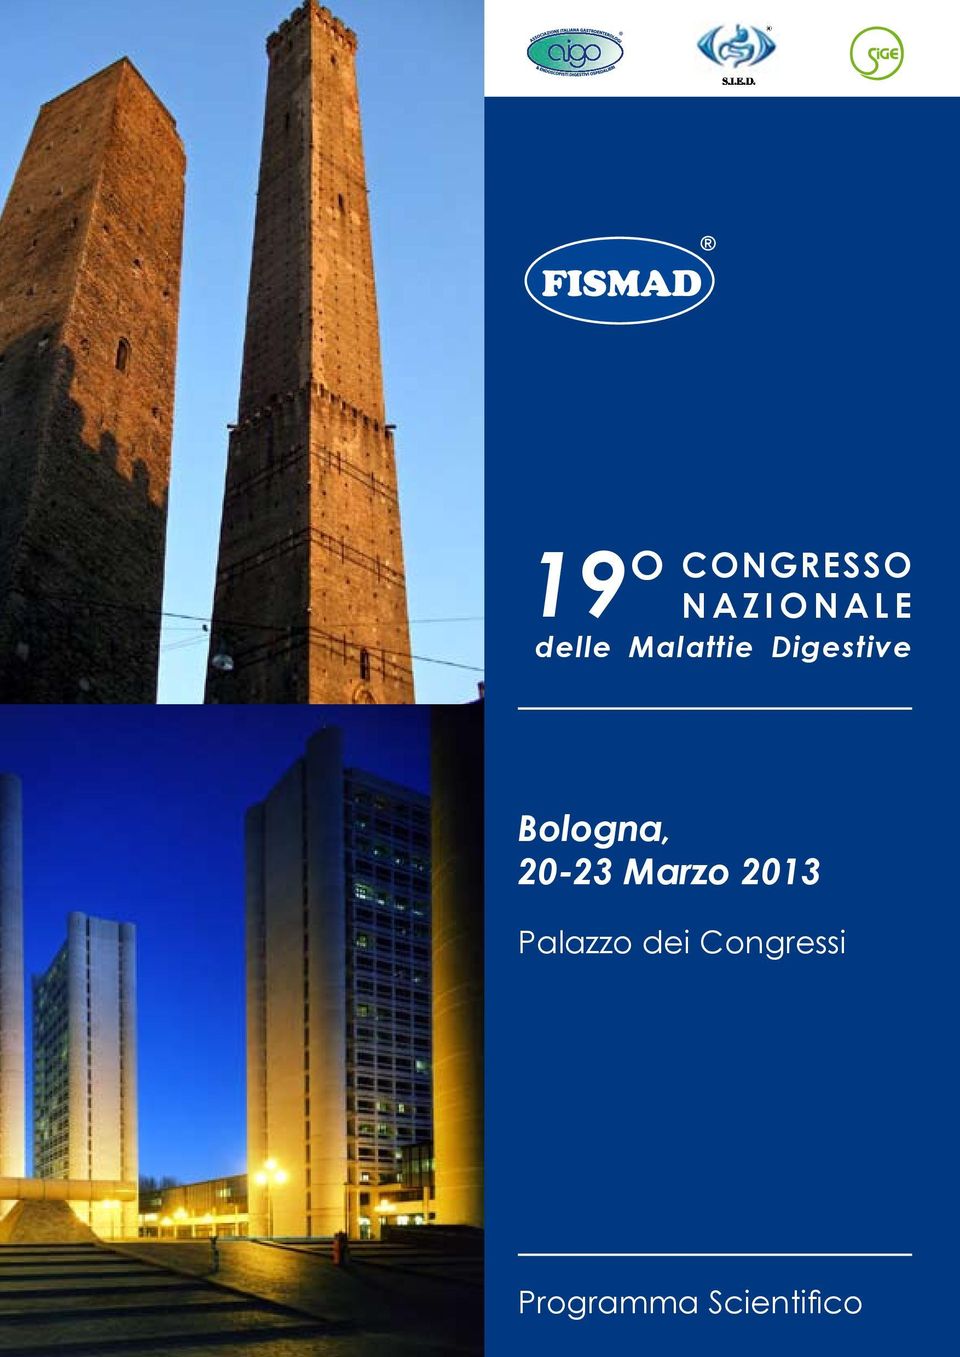 Bologna, 20-23 Marzo 2013